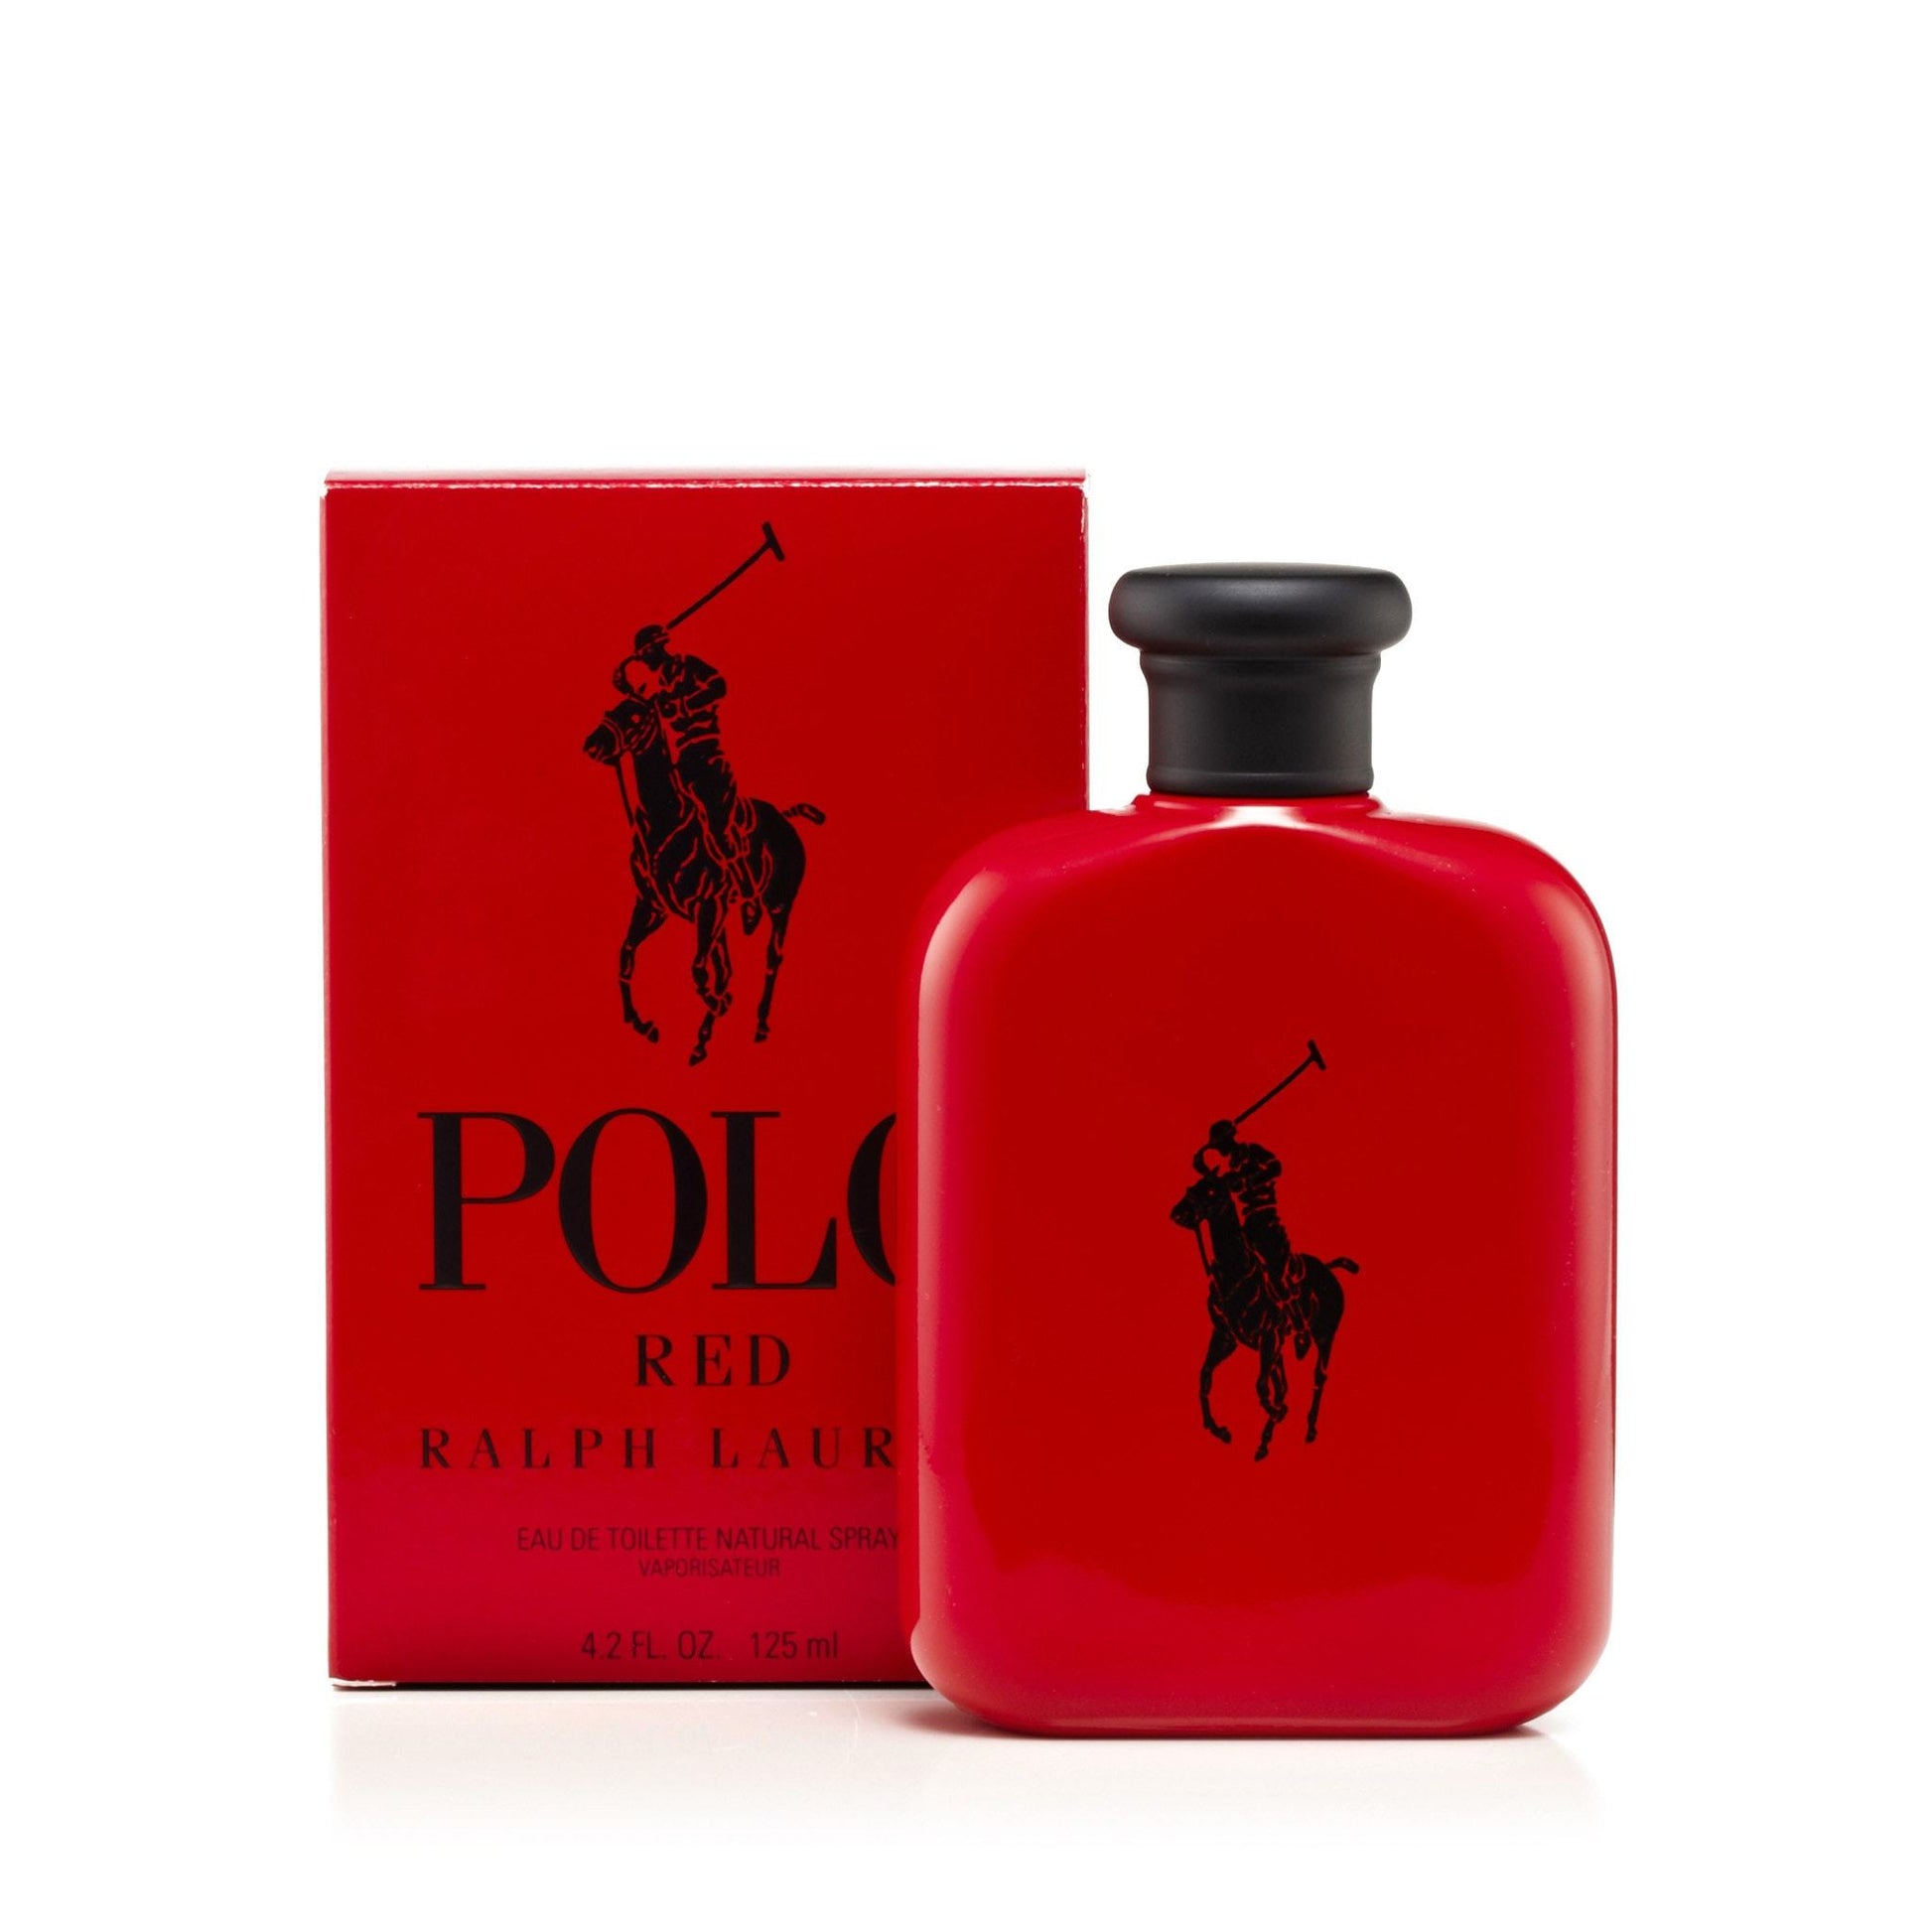 Polo Red Eau de Toilette Spray for Men by Ralph Lauren, Product image 6